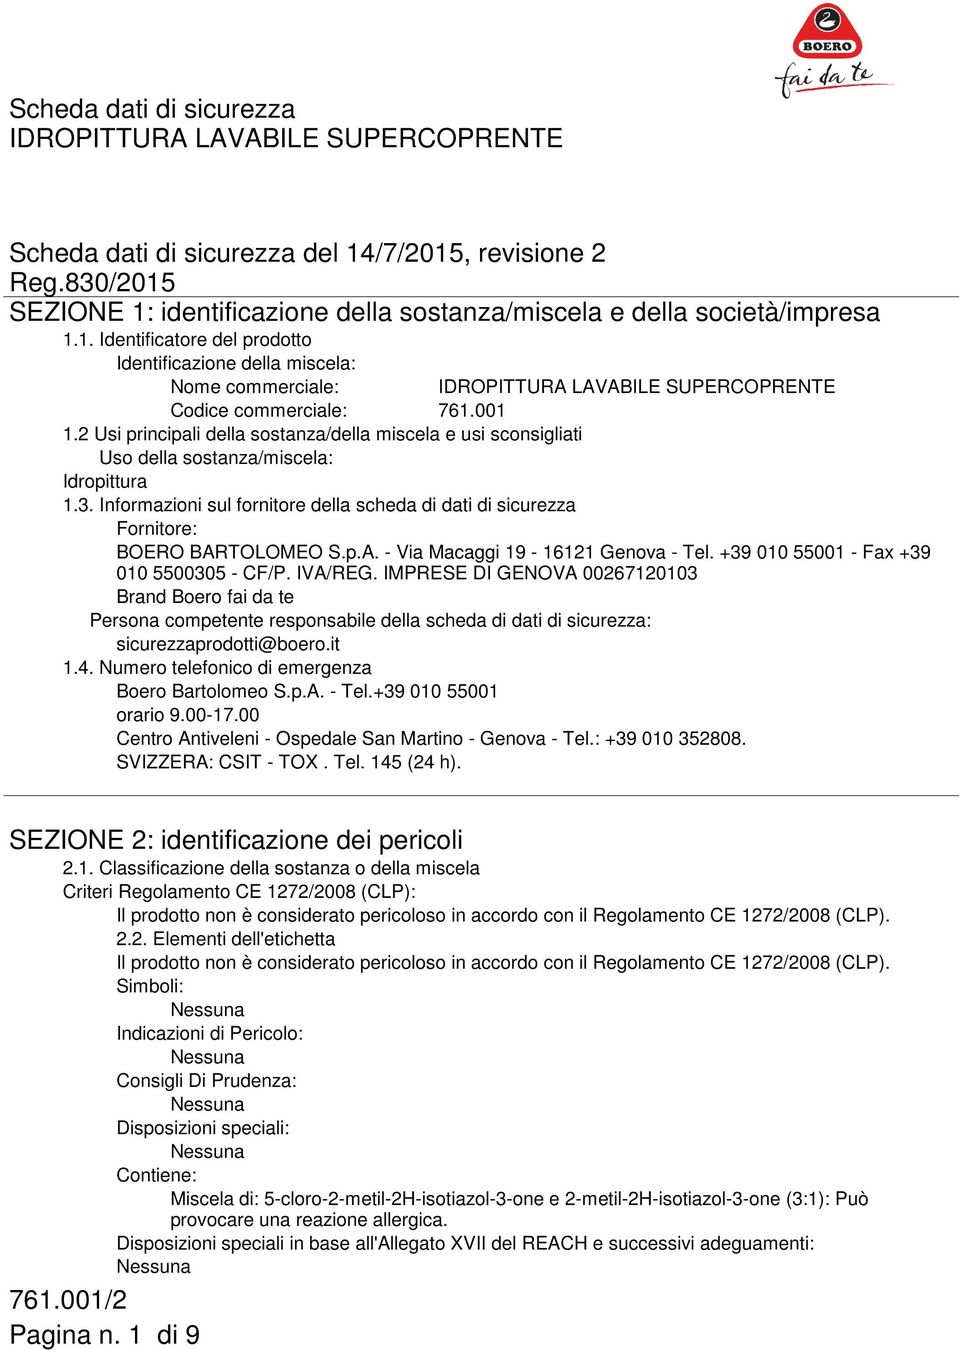 Informazioni sul fornitore della scheda di dati di sicurezza Fornitore: BOERO BARTOLOMEO S.p.A. - Via Macaggi 19-16121 Genova - Tel. +39 010 55001 - Fax +39 010 5500305 - CF/P. IVA/REG.